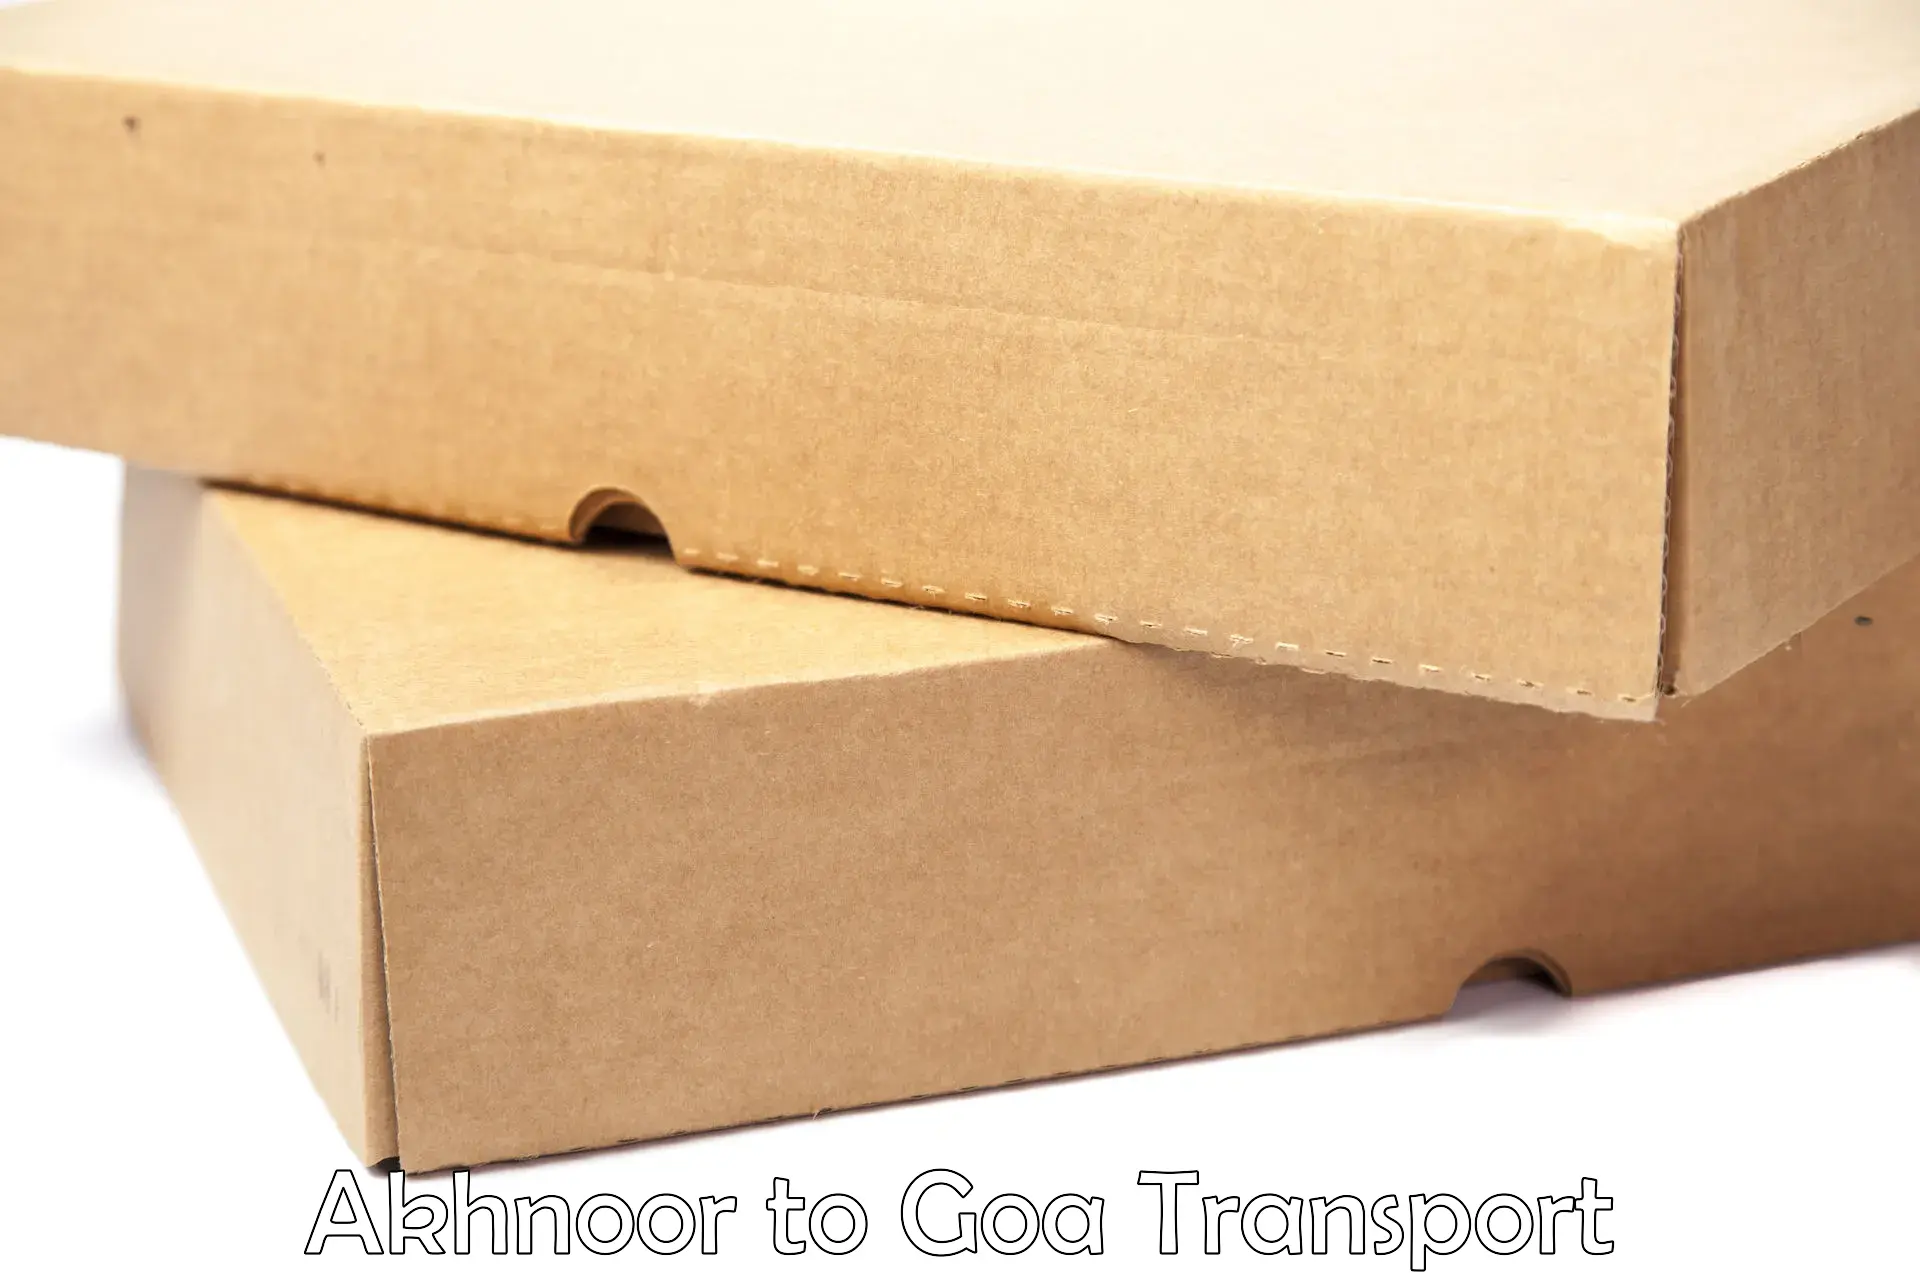 Vehicle parcel service Akhnoor to IIT Goa